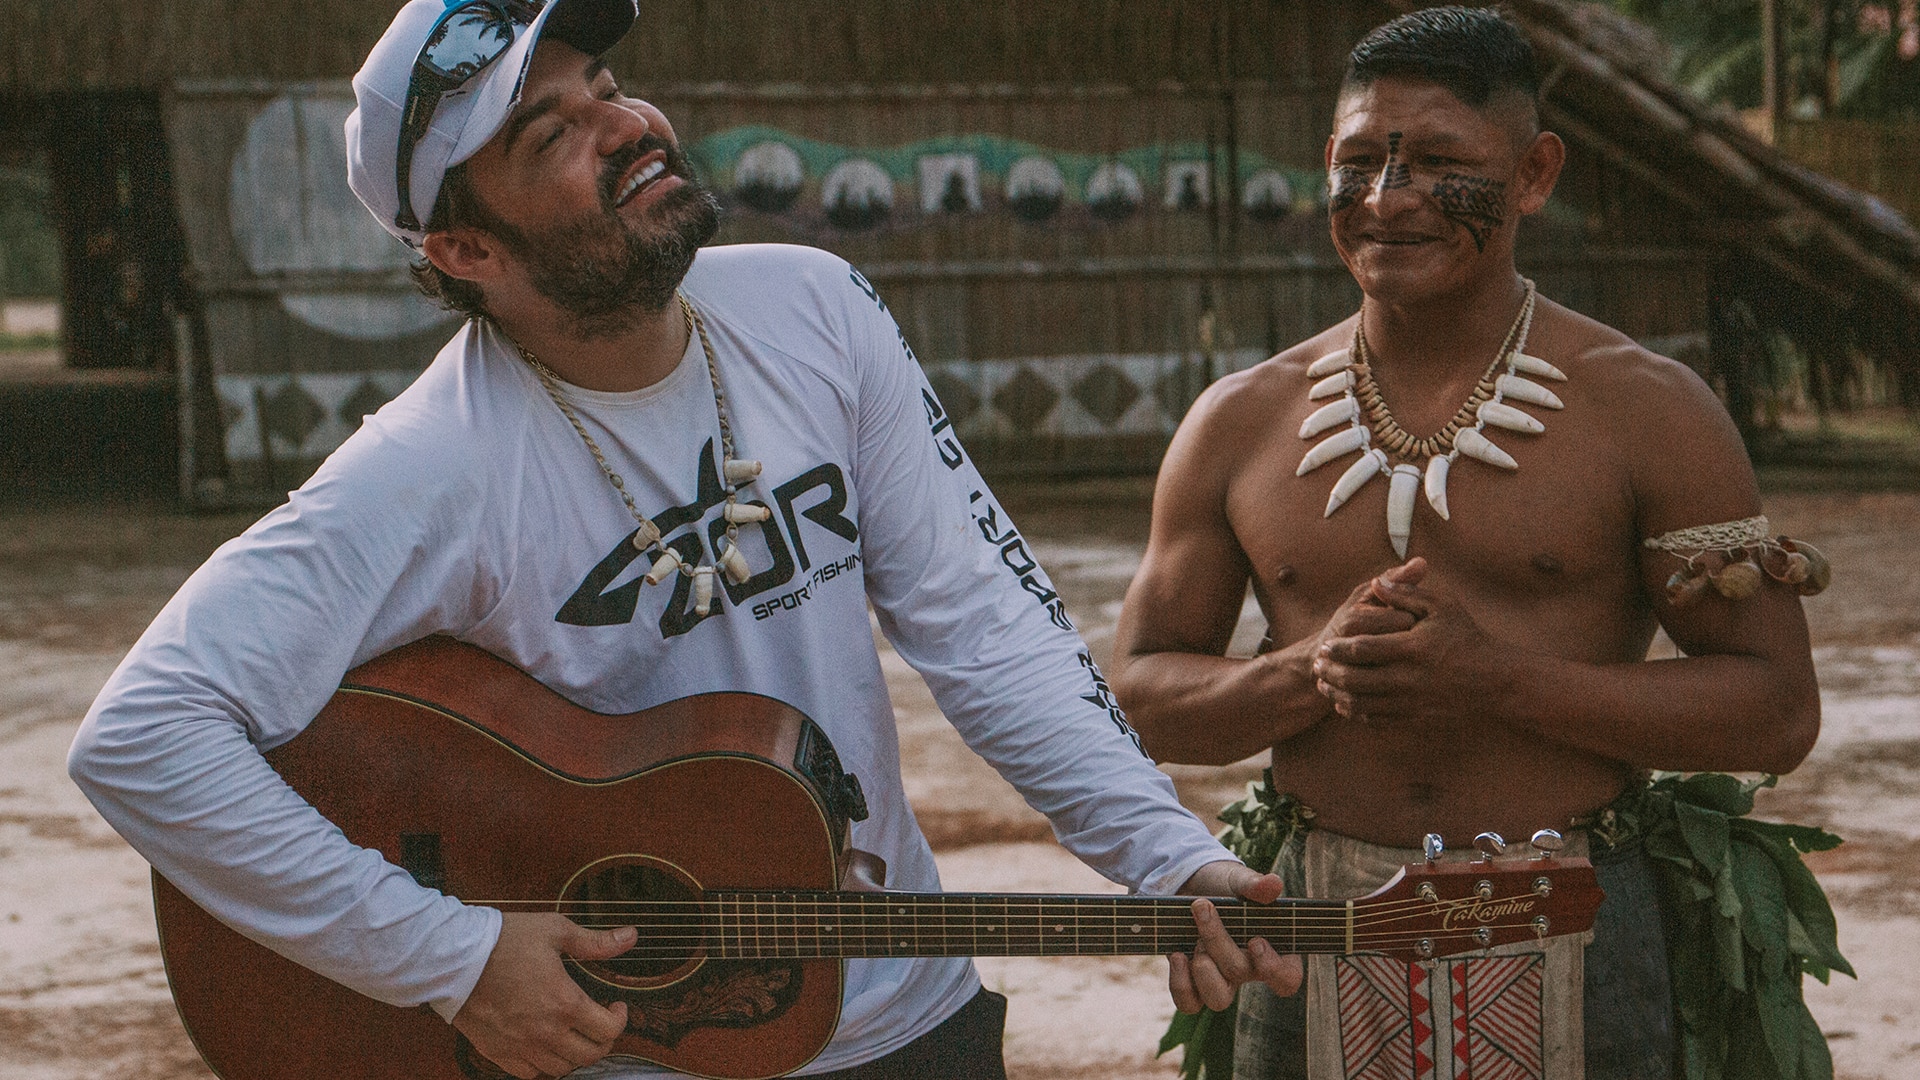 Fernando tocando violão com índio da Amazônia